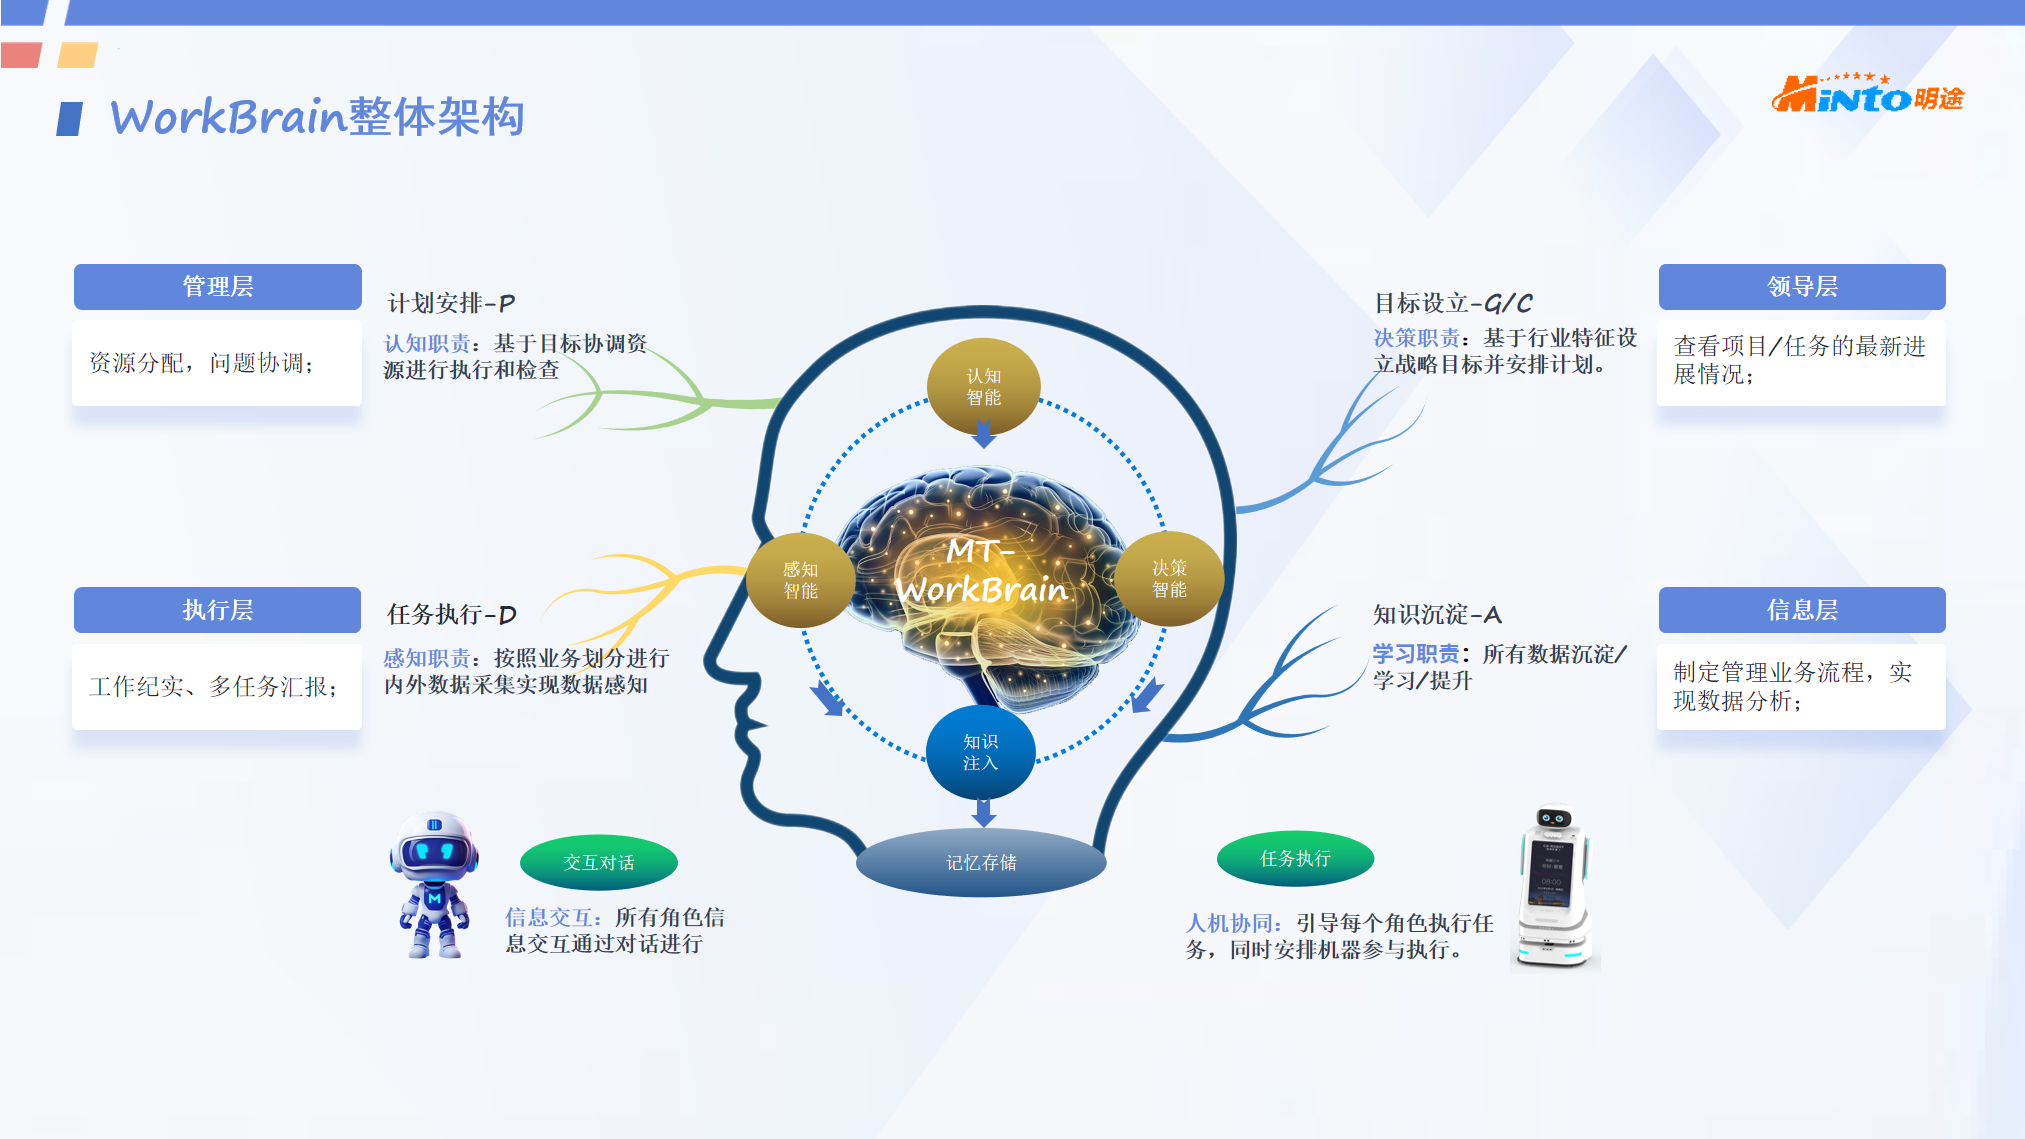 开创数字人WorkChat工作领域应用,打造数字大脑WorkBrain领先技术